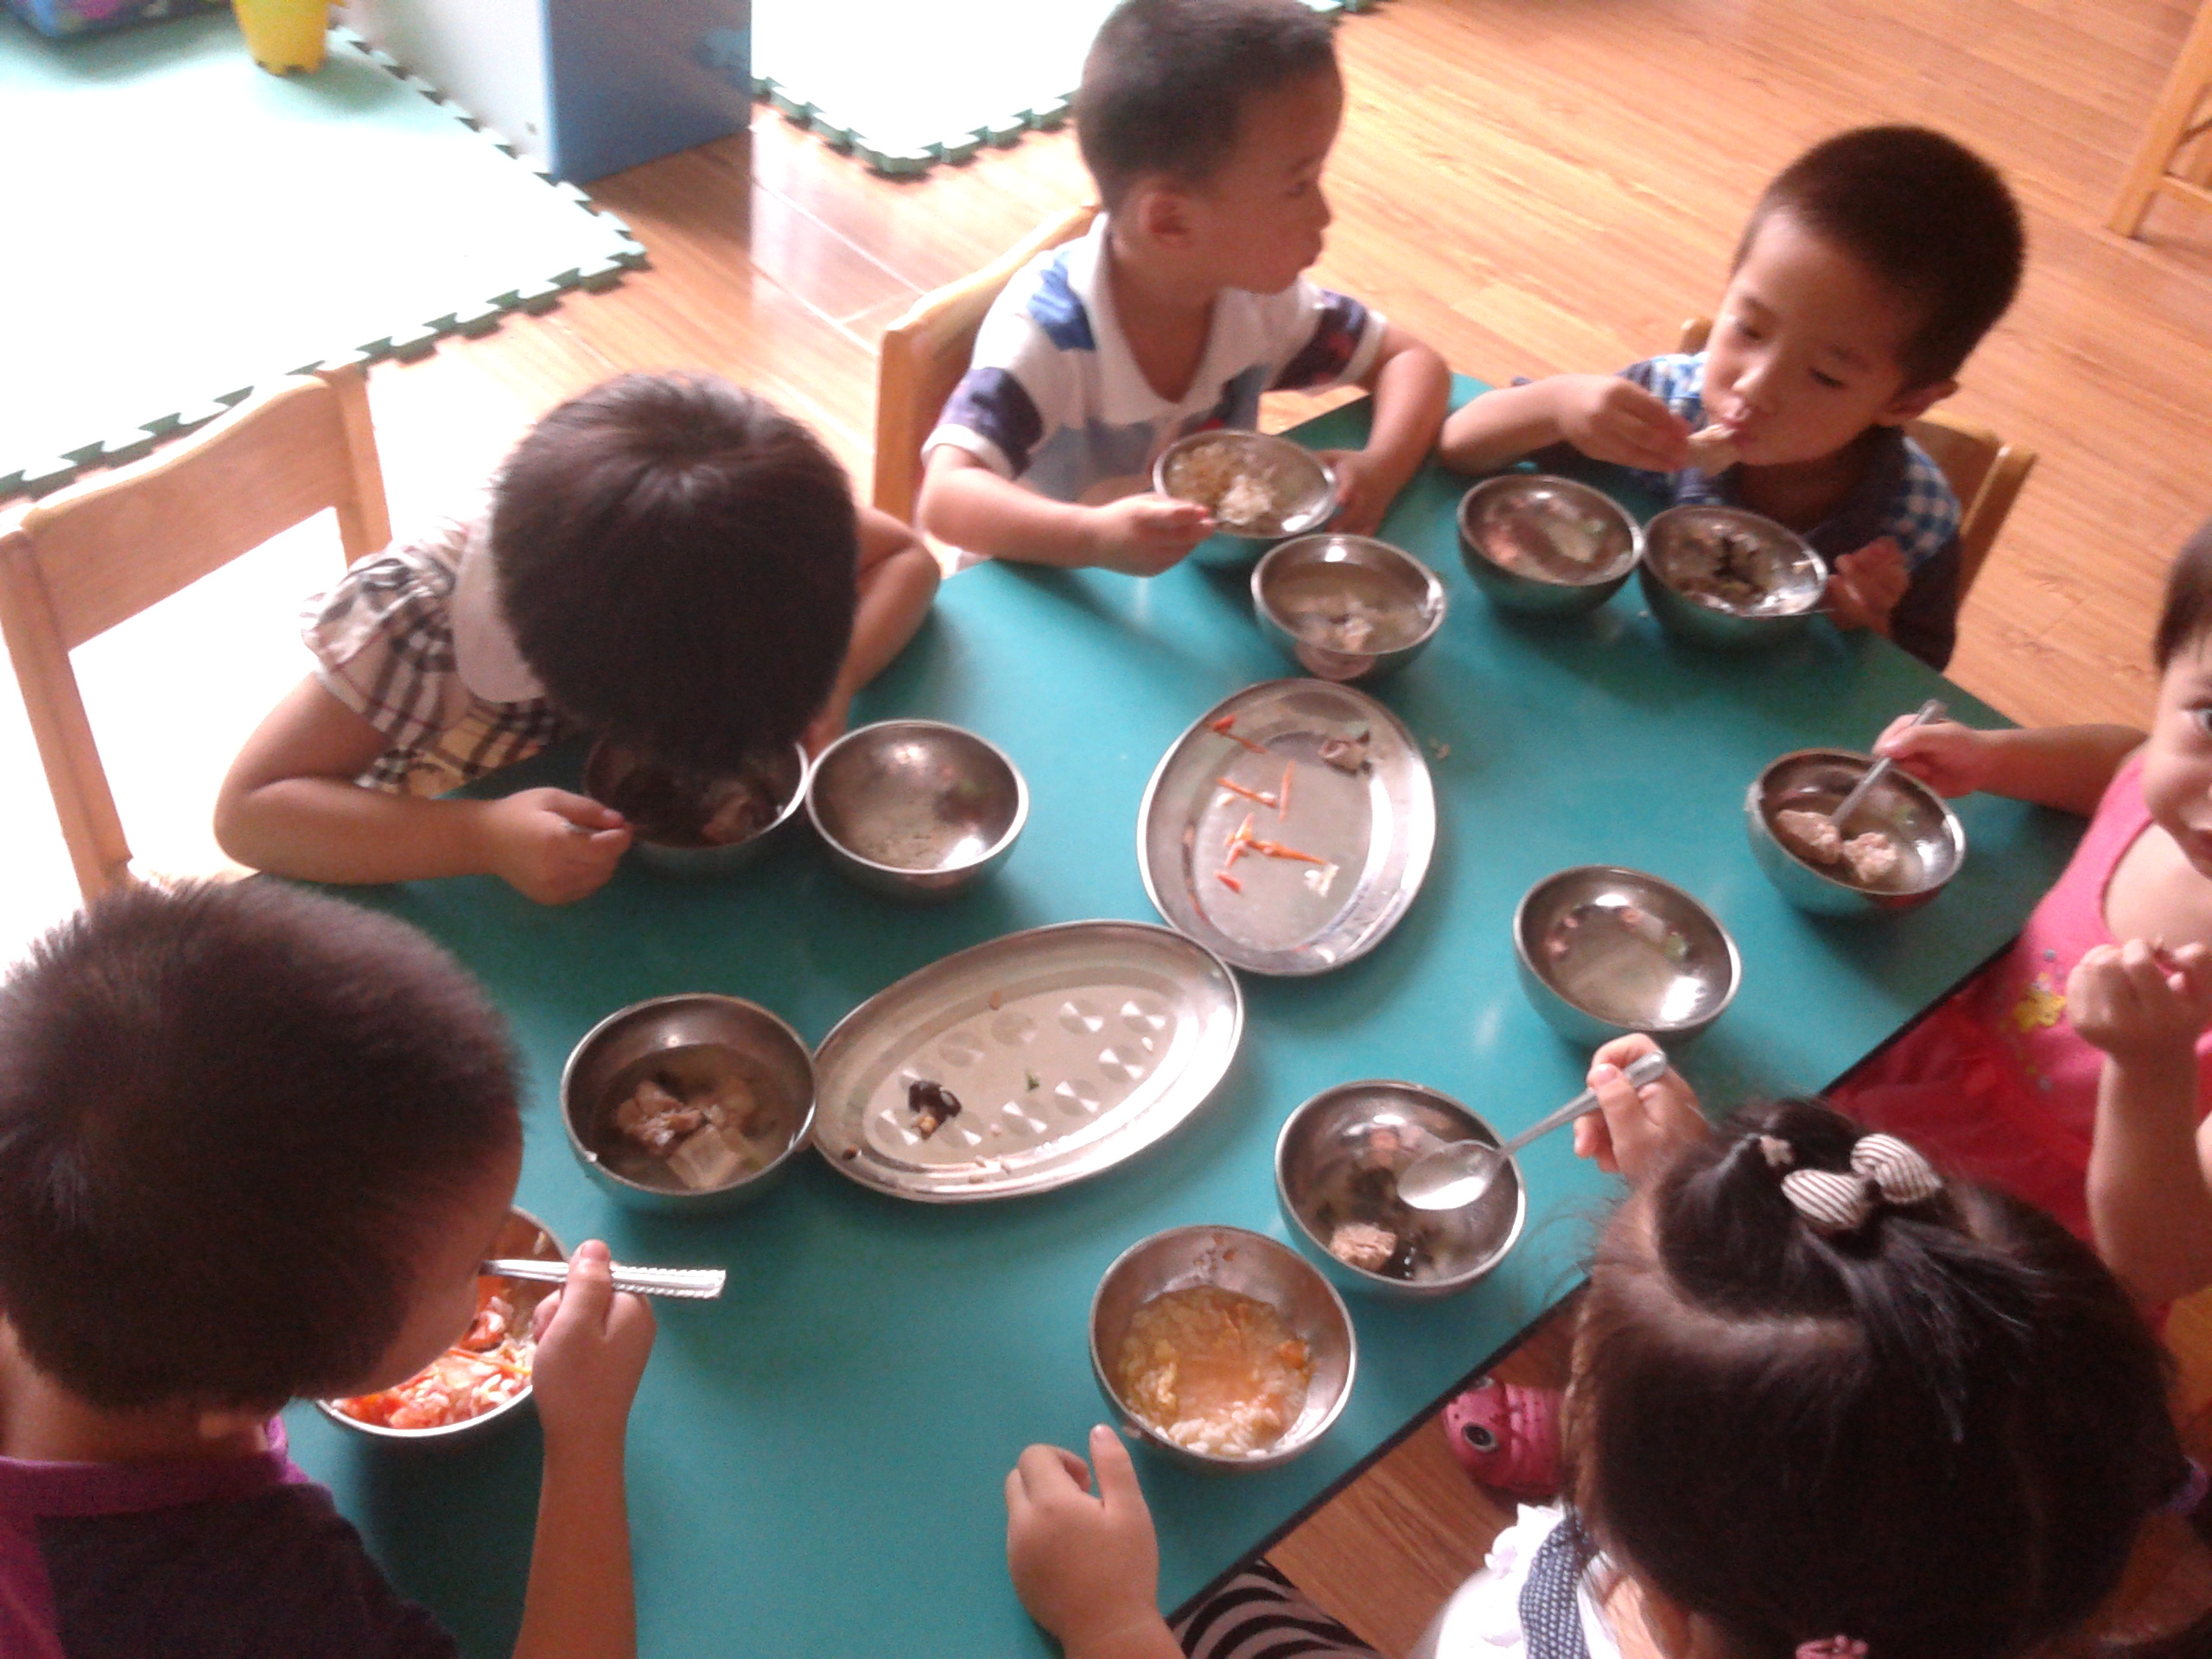 日本小孩吃饭碗都捧起来的,中国小孩吃饭碗都放在桌上的